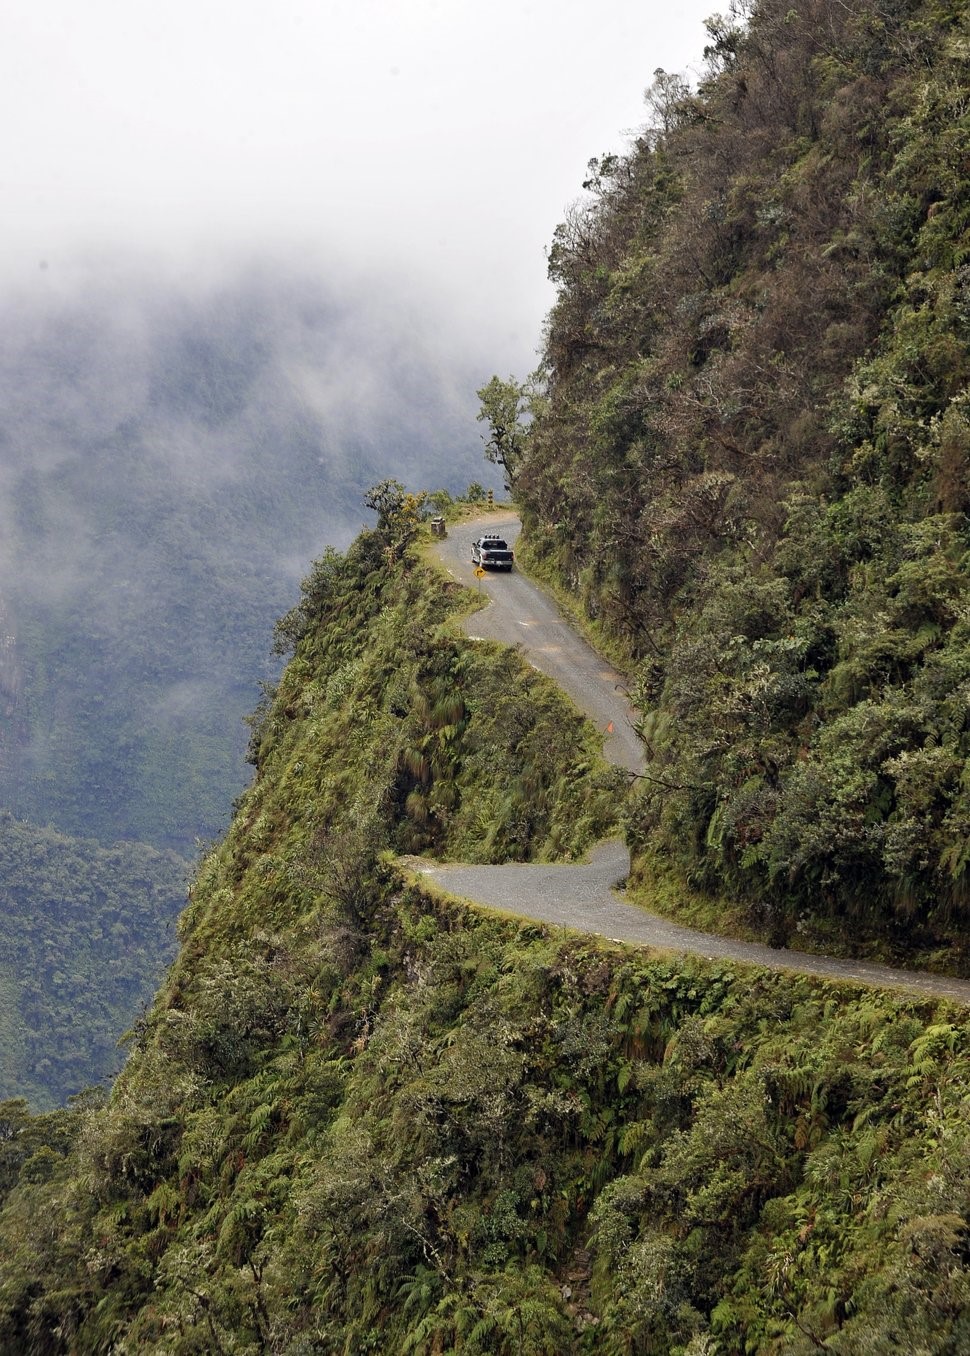 Đường tử thần, Bolivia: Con đường men theo vách đá ở độ cao hơn 600 m này rộng khoảng 3,6 m, với một bên là vực sâu thăm thẳm. Đường có nhiều đoạn sạt lở, trơn tuột khi trời mưa, và nhiều khúc cua chết người. 